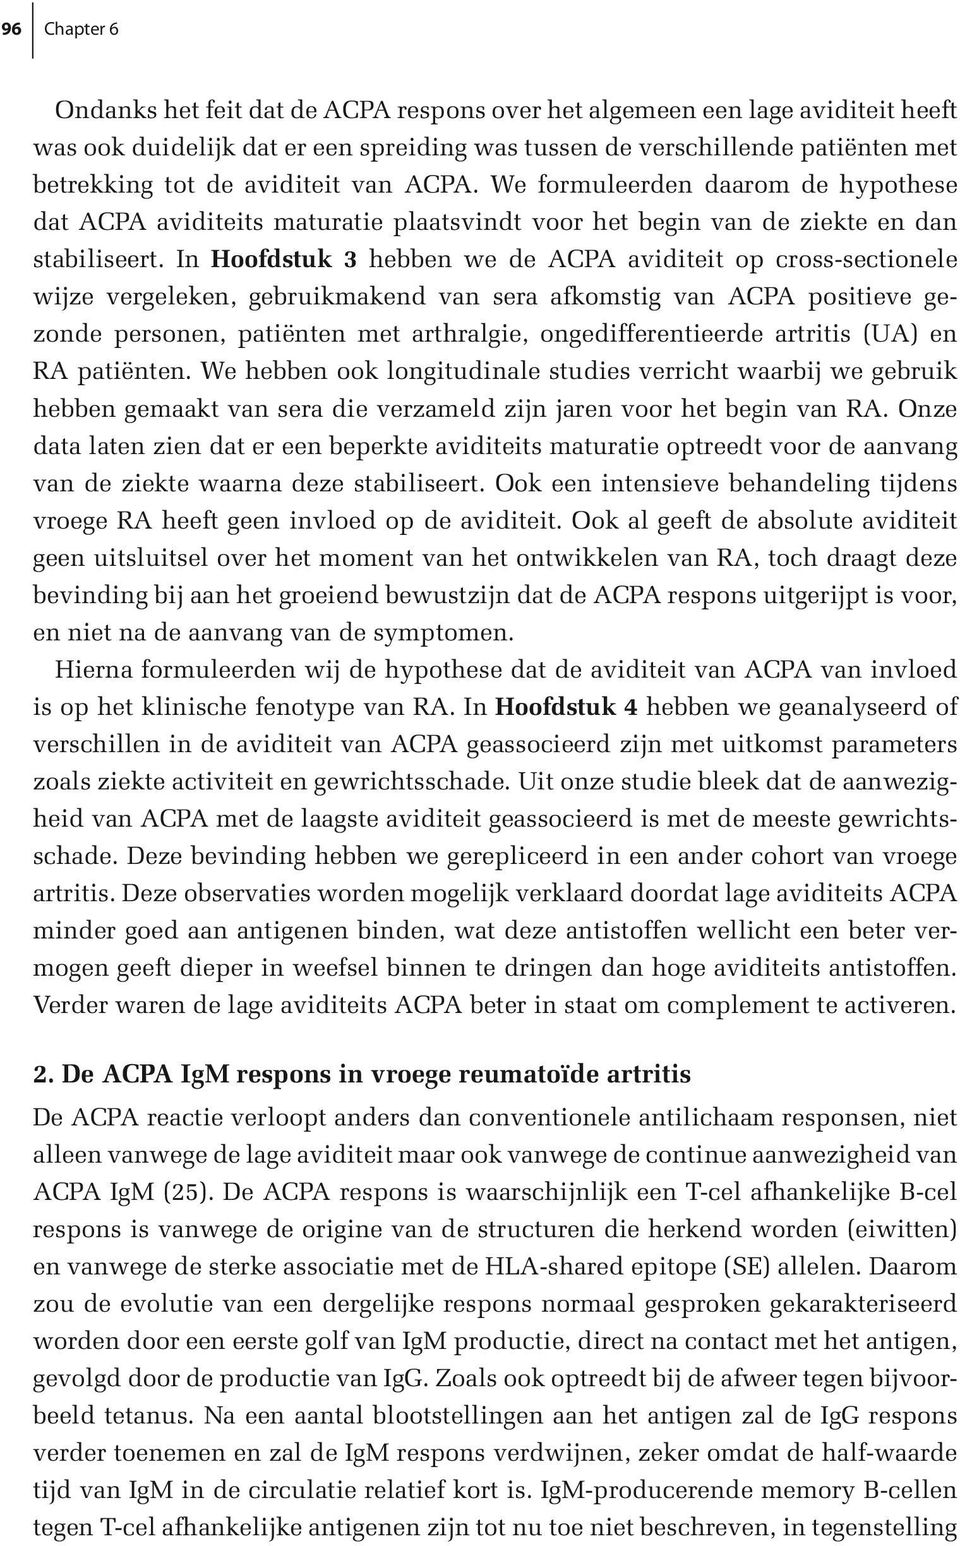 In Hoofdstuk 3 hebben we de ACPA aviditeit op cross-sectionele wijze vergeleken, gebruikmakend van sera afkomstig van ACPA positieve gezonde personen, patiënten met arthralgie, ongedifferentieerde